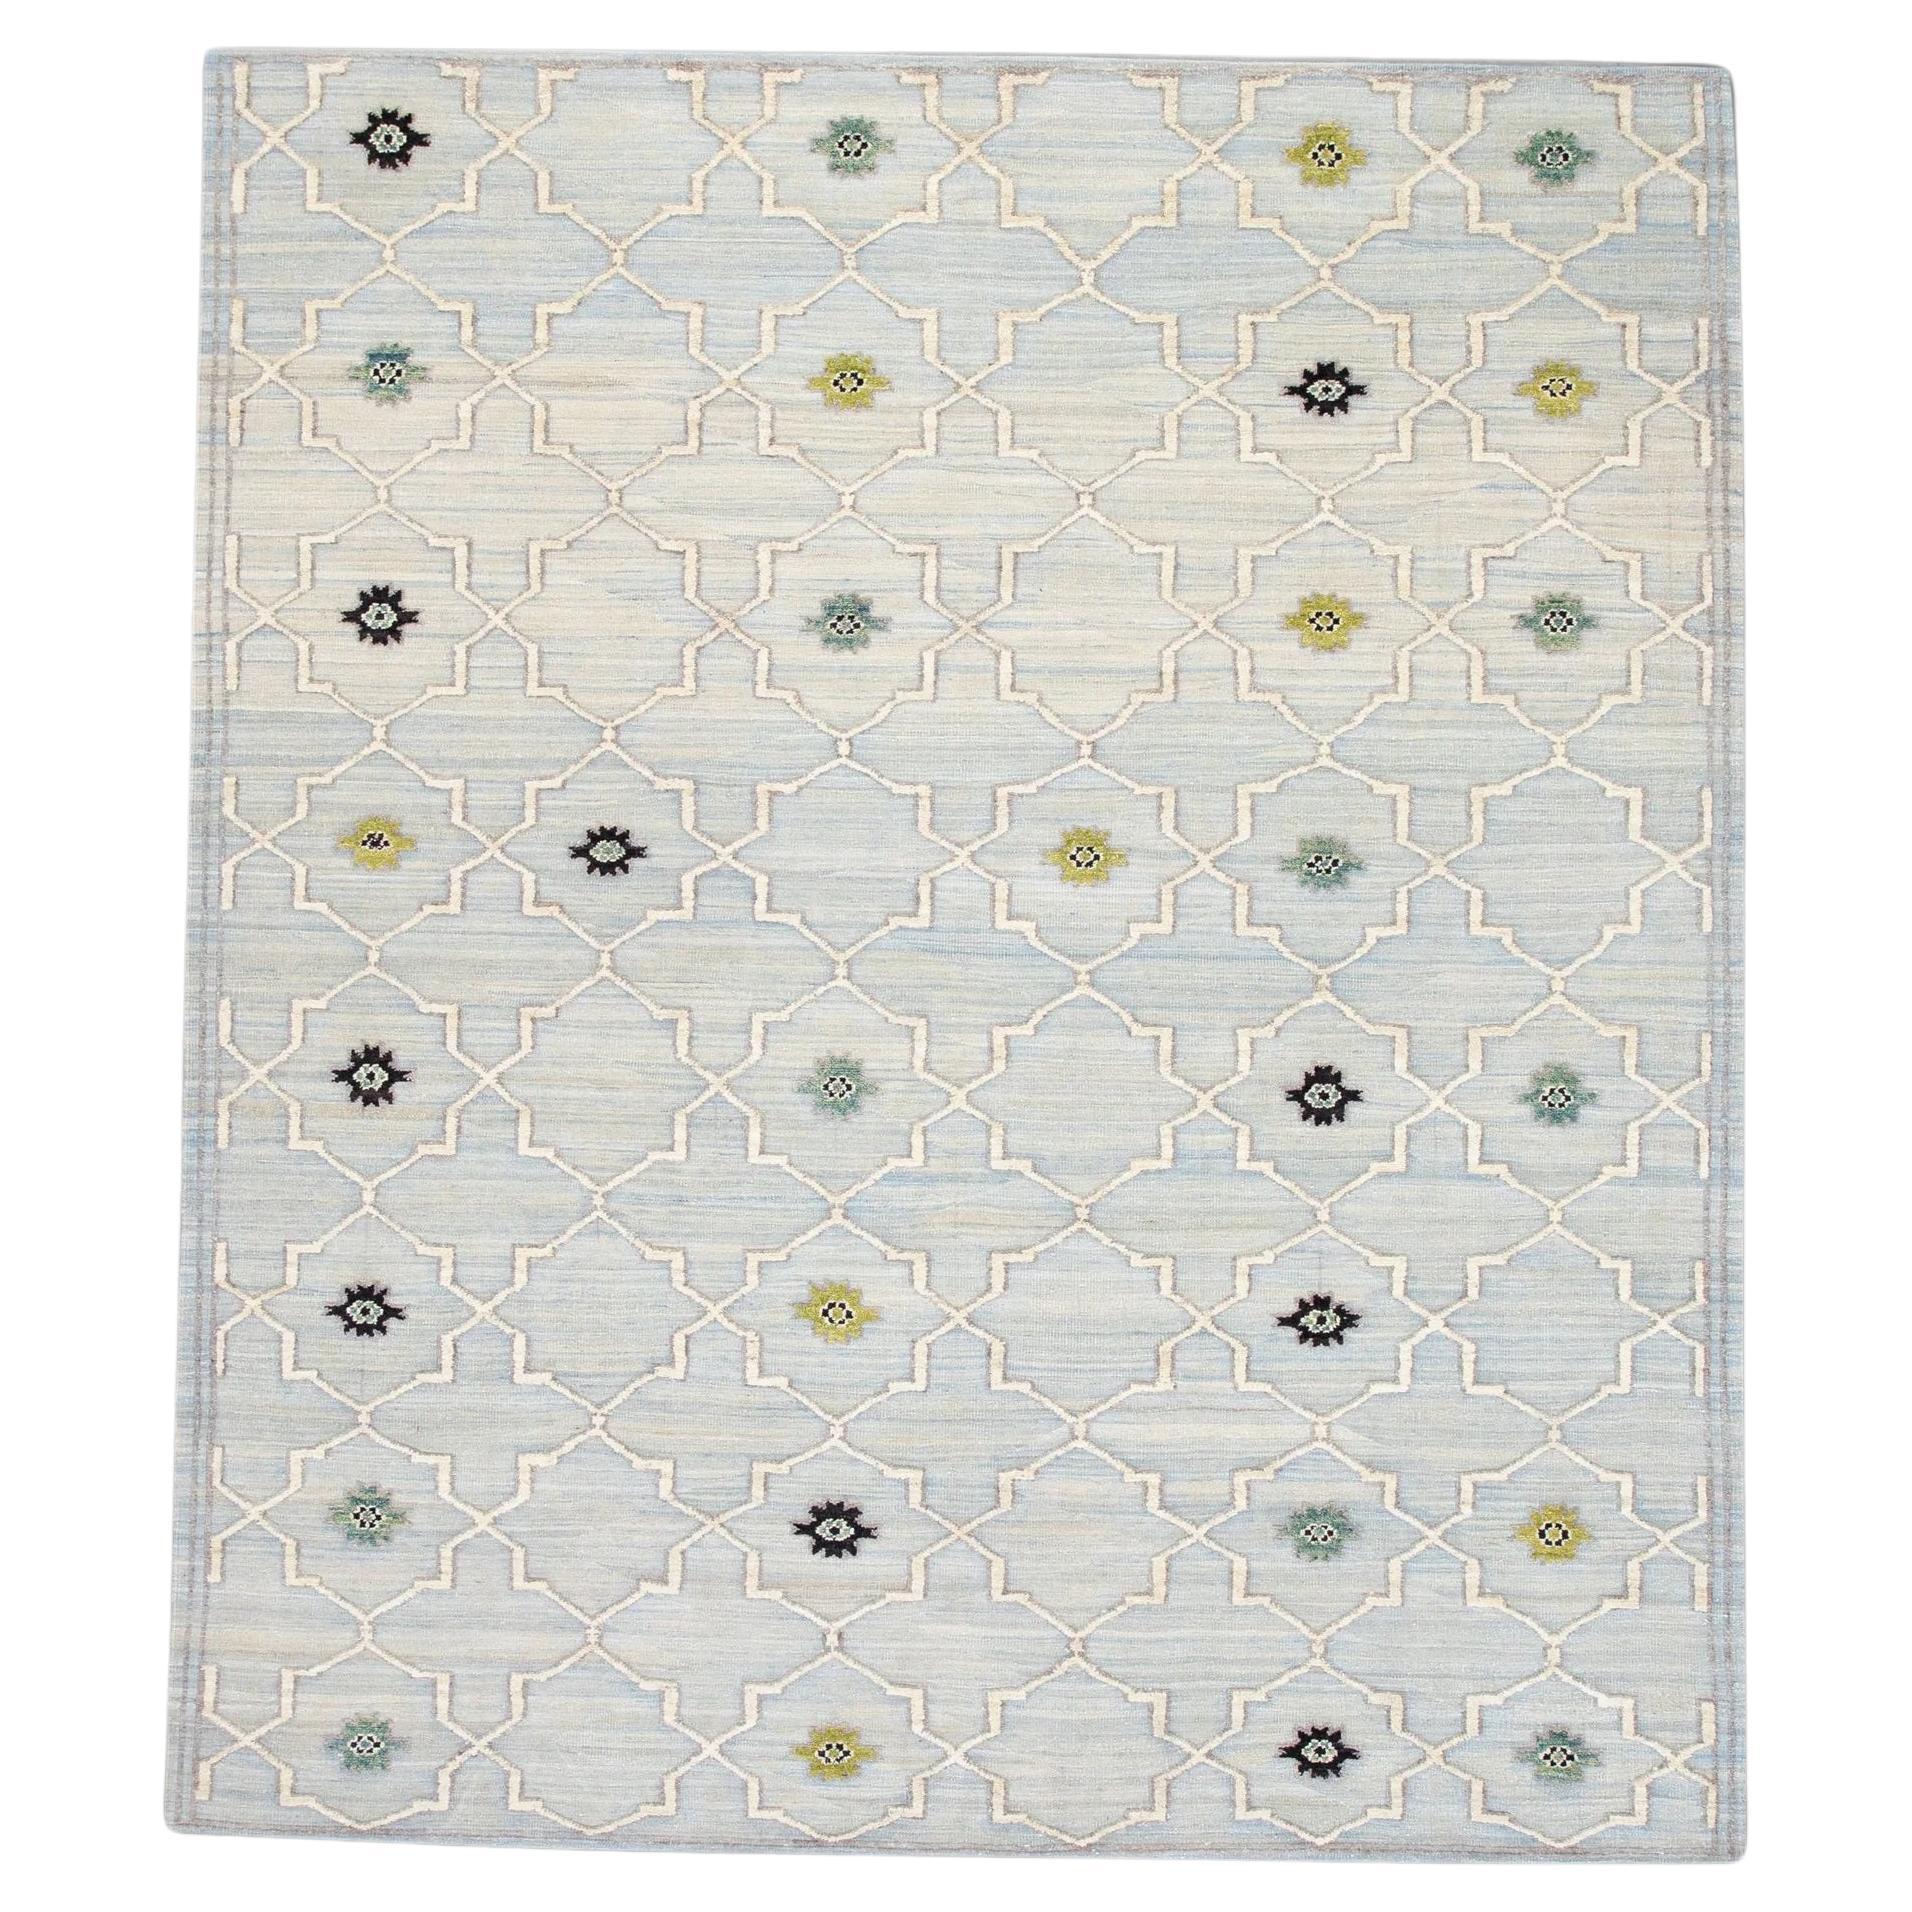 Blue and Green Geometric Design Flatweave Handmade Wool Rug 8'3" X 10'2"